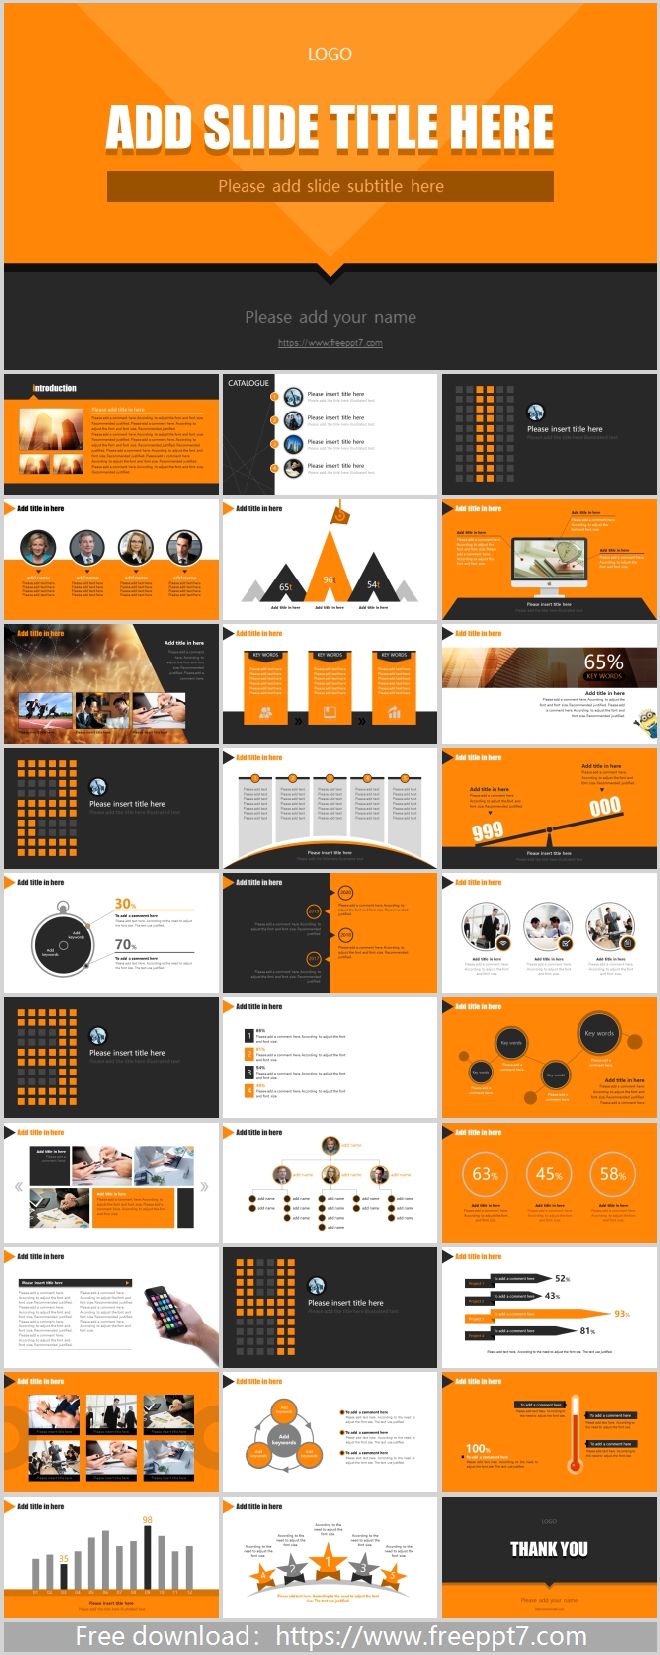 Mẫu PowerPoint doanh nghiệp màu vàng và đen: Với mẫu PowerPoint doanh nghiệp màu vàng và đen của chúng tôi, bạn sẽ có một bài thuyết trình chuyên nghiệp, sự kiện sáng tạo và thu hút những cơ hội mới. Màu sắc tinh tế và trang trọng sẽ làm nổi bật hình ảnh thương hiệu của bạn.